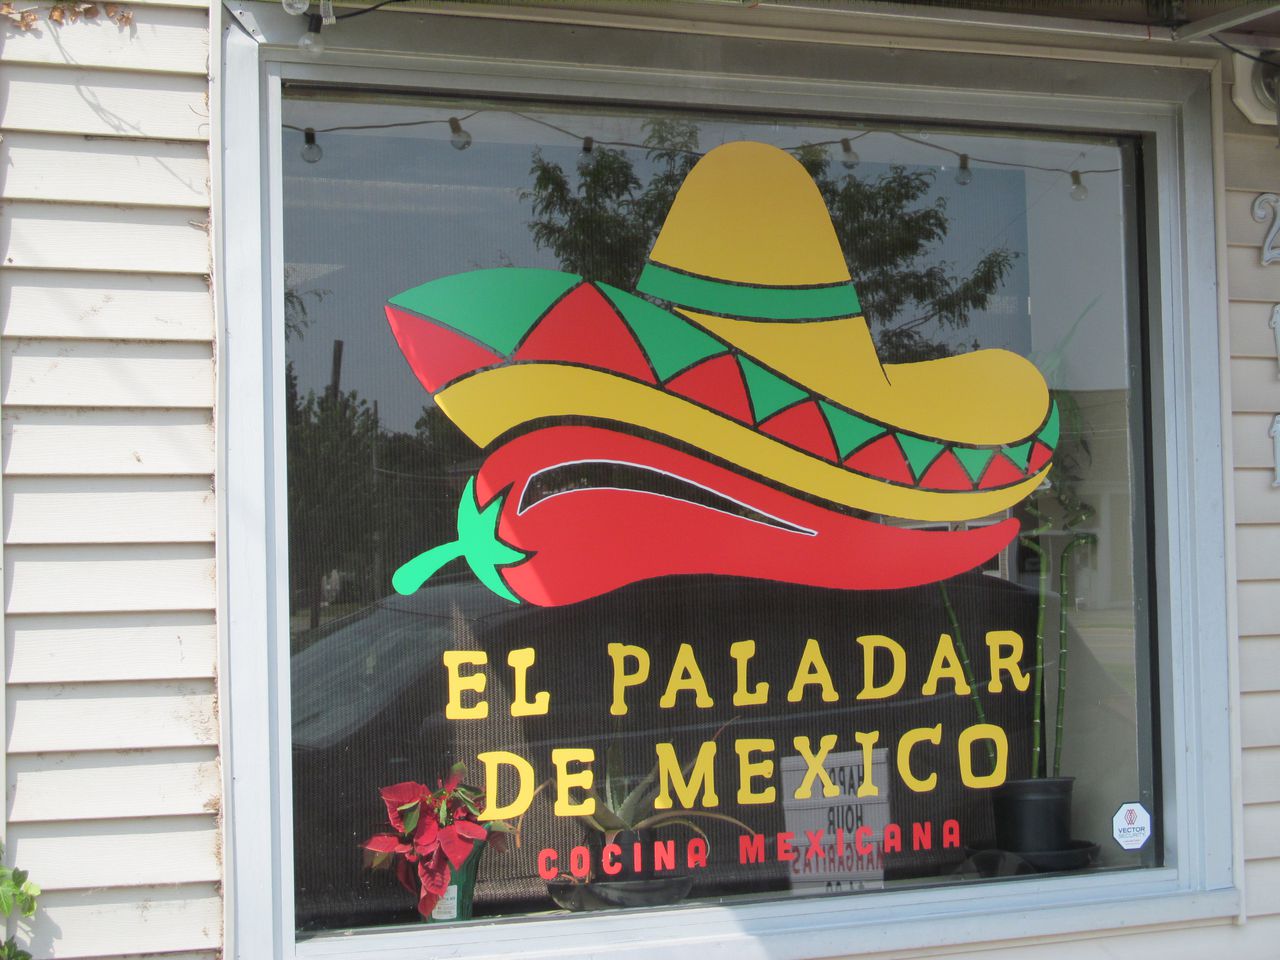 El Paladar de Mexico has one of the highest health inspector violation counts in Lake County.